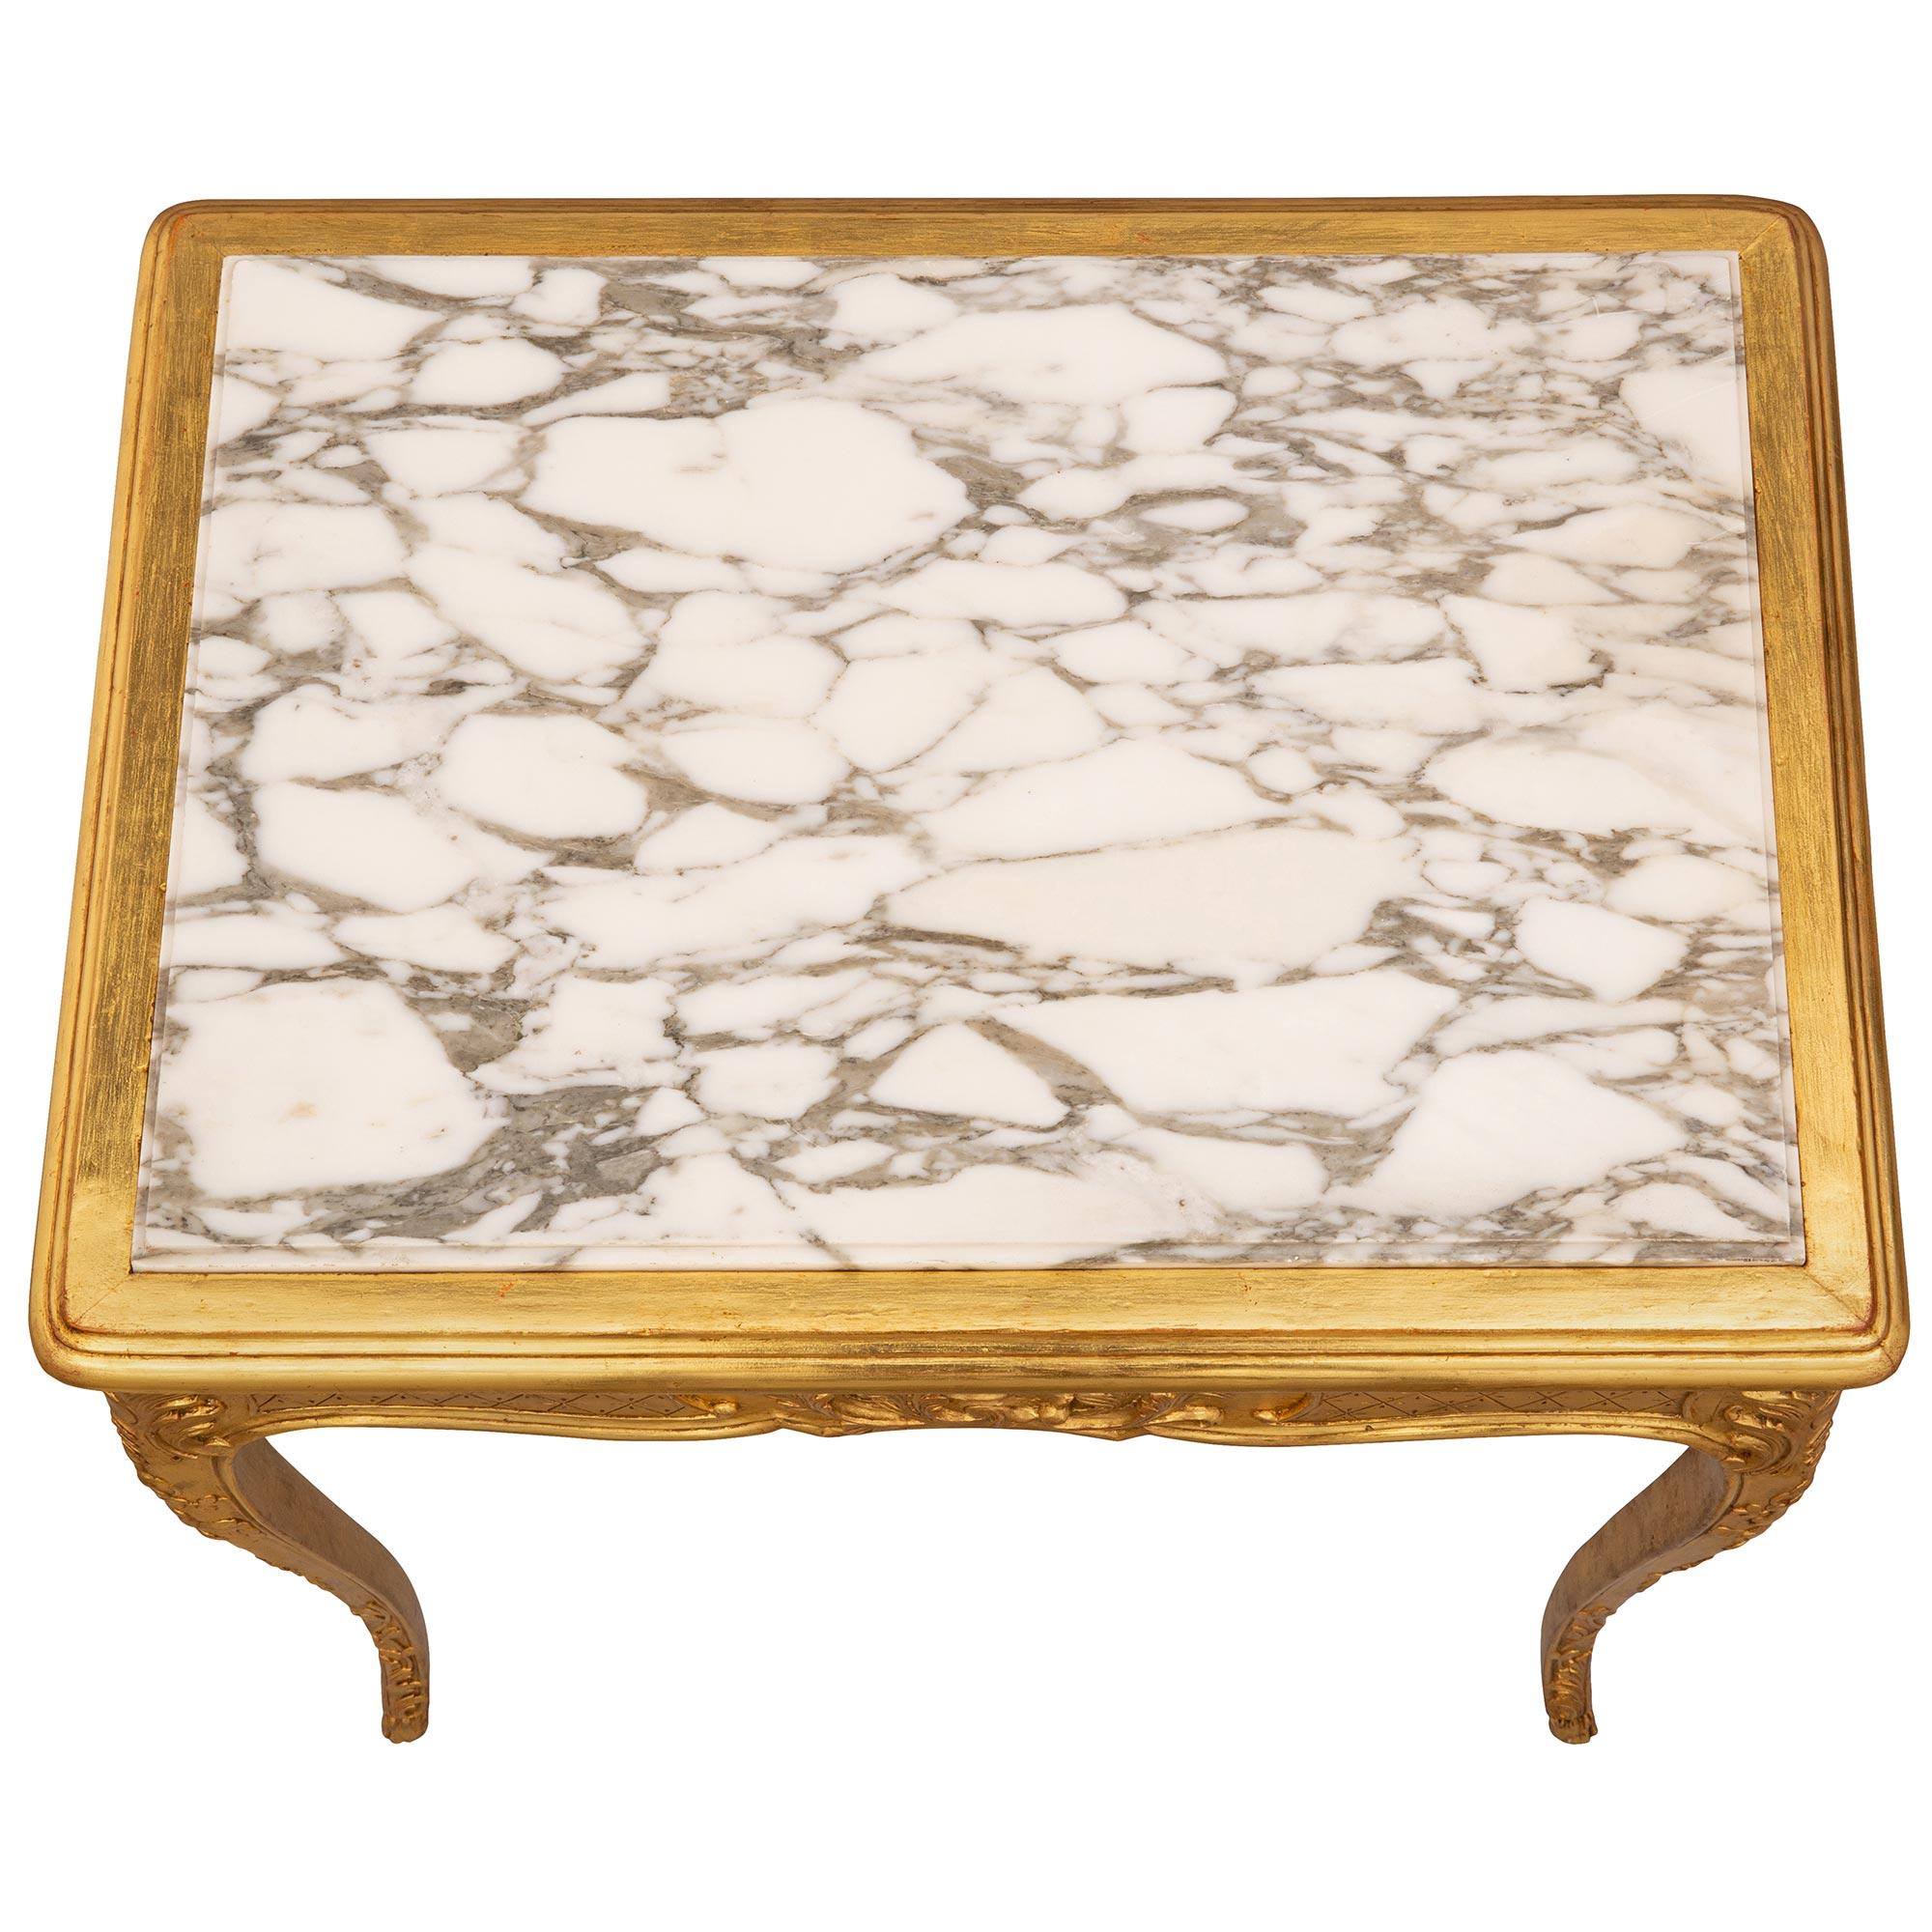 Ein schöner und sehr eleganter französischer Beistelltisch aus Goldholz und Fleur de Pêcher-Marmor aus dem 19. Der Tisch steht auf schönen, schlanken, spitz zulaufenden Cabriole-Beinen mit feinen Huffüßen und reizvollen geschnitzten Blatt- und